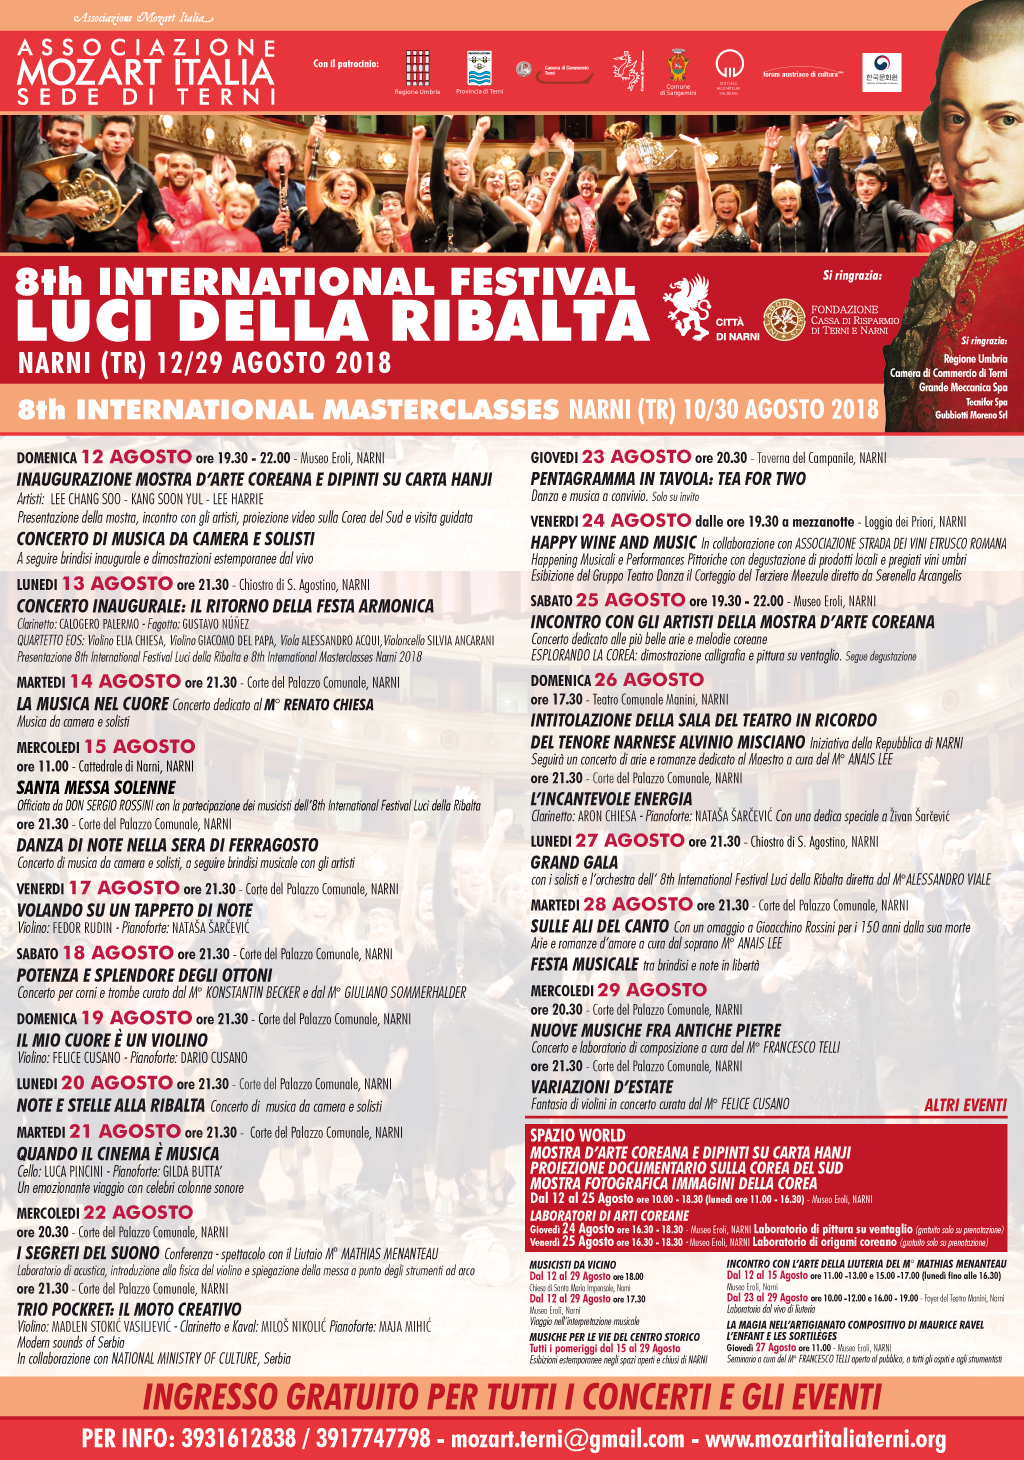 INTERNATIONAL FESTIVAL LUCI DELLA RIBALTA